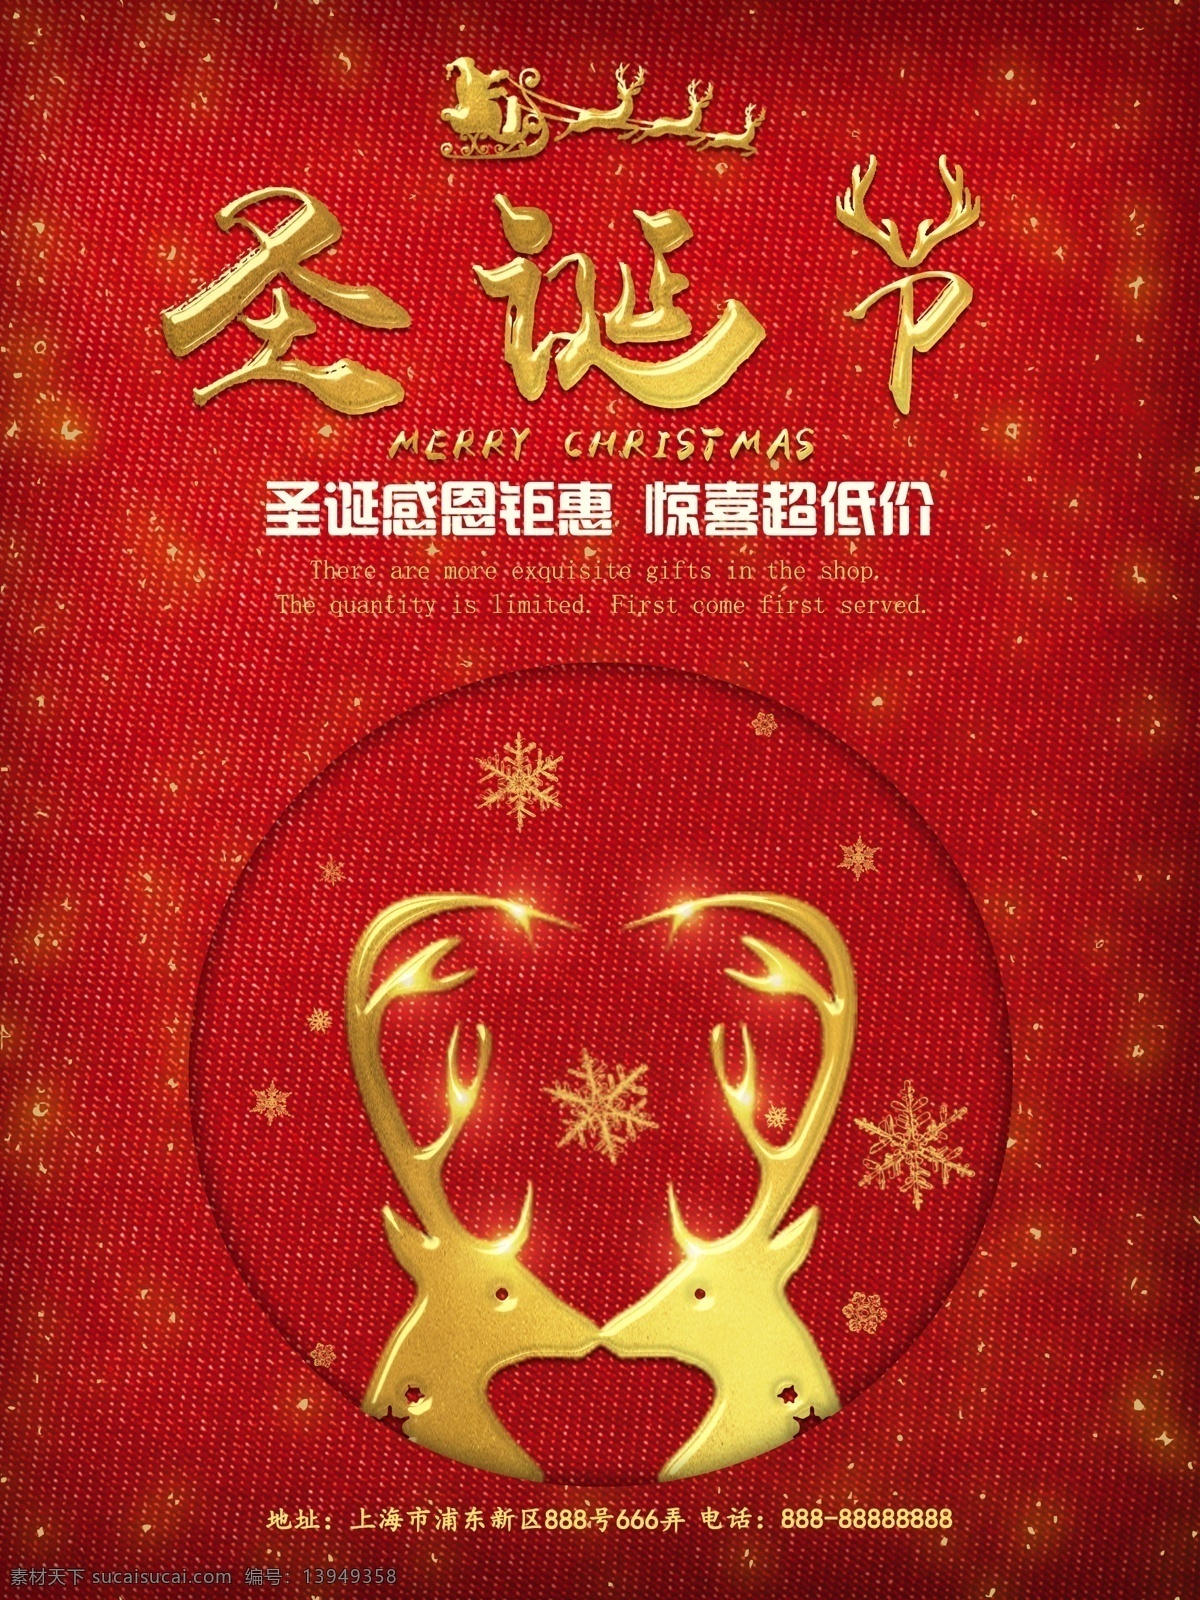 金色 麋鹿 圣诞节 促销 海报 促销海报 打折 温馨 满减 惊喜